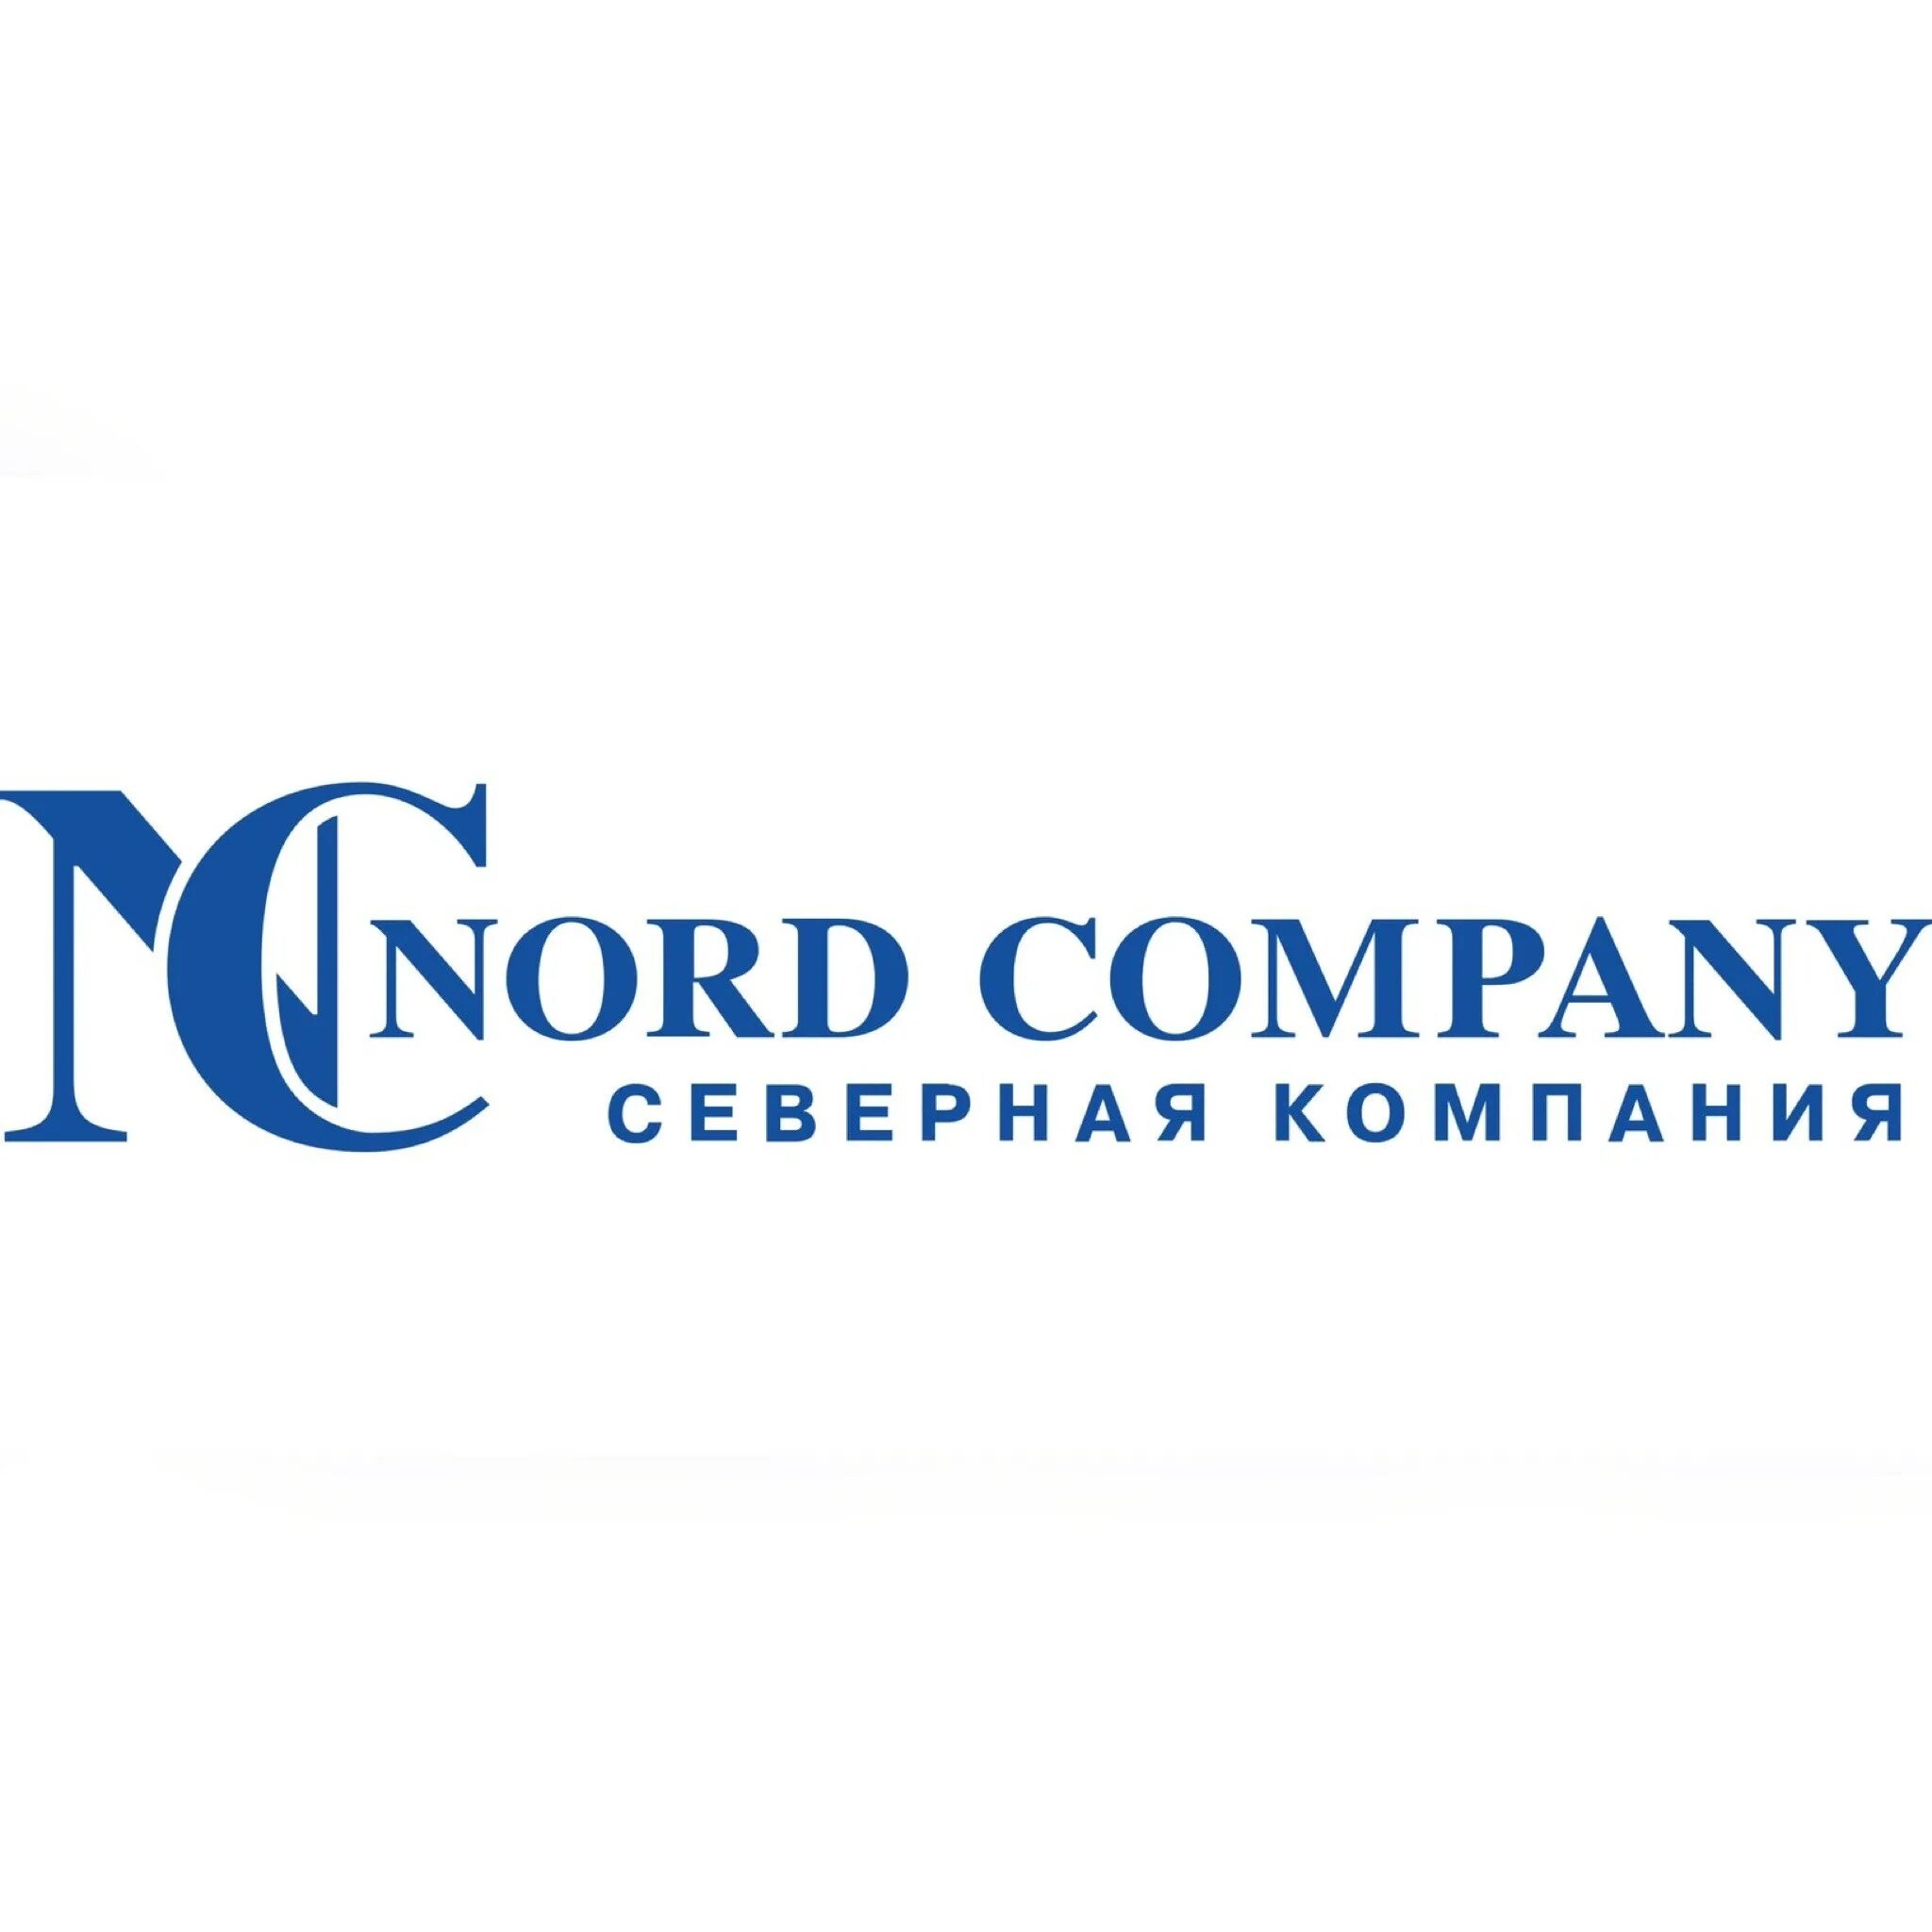 Северная компания. Nord Company. ООО Норд Компани. Северная компания Санкт-Петербург.